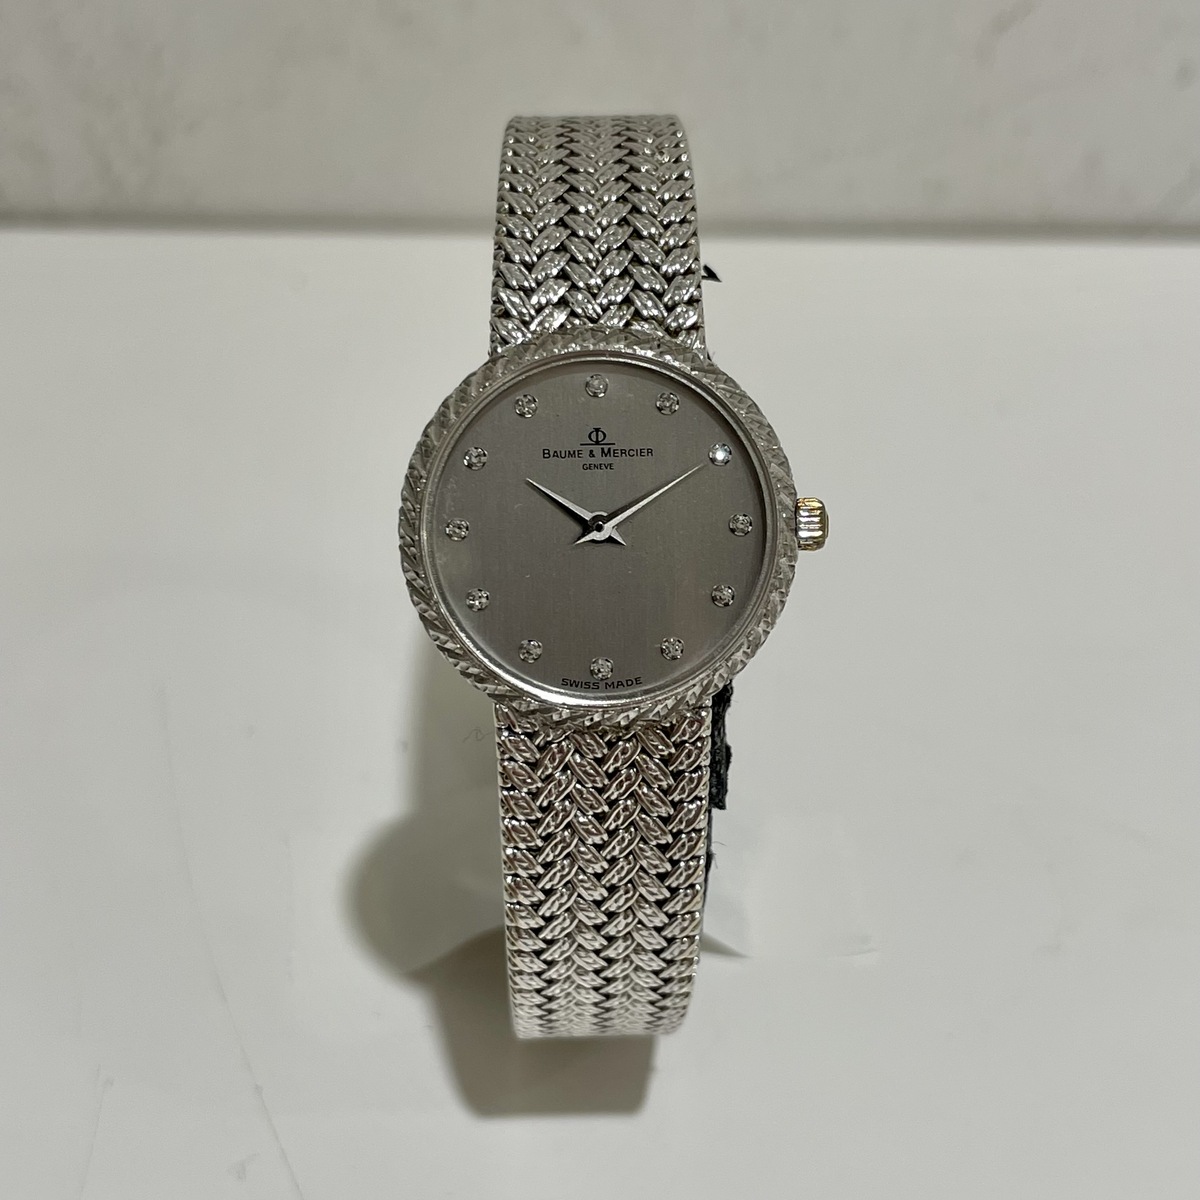 ボーム&メルシエのK18WG 16662 12Pダイヤモンド QZ時計の買取実績です。